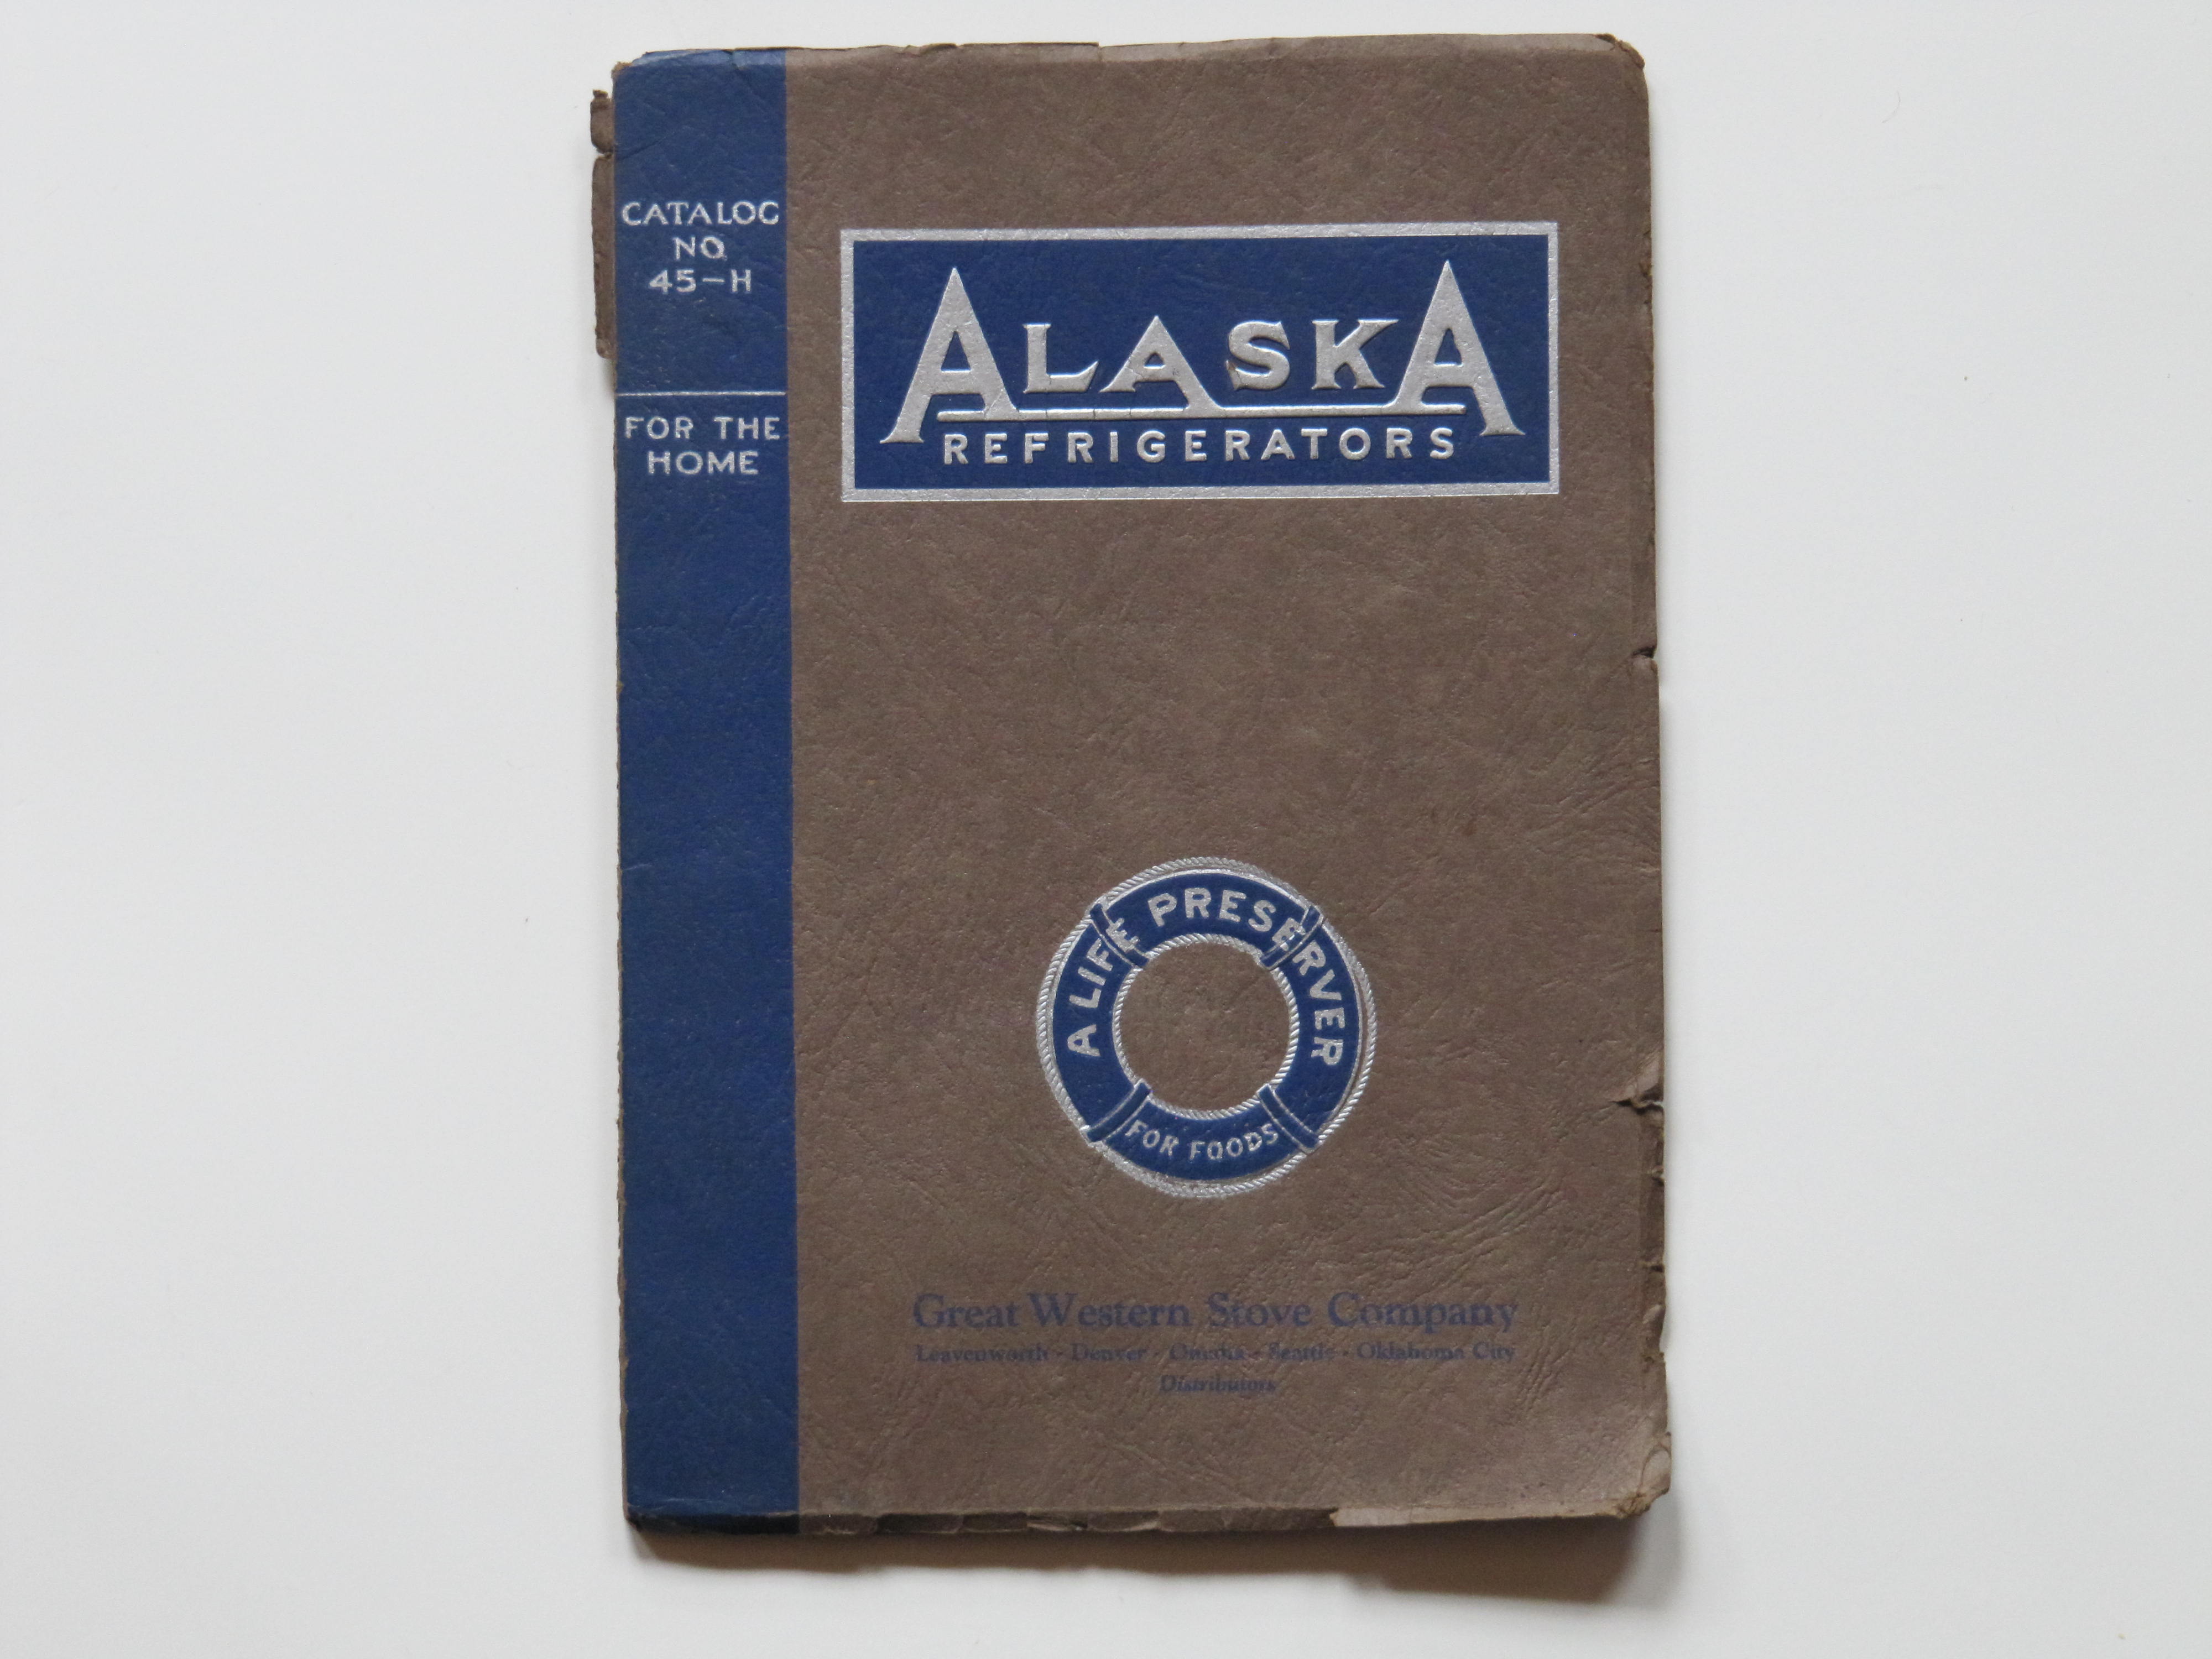 Alaska Refrigerators No 45-H